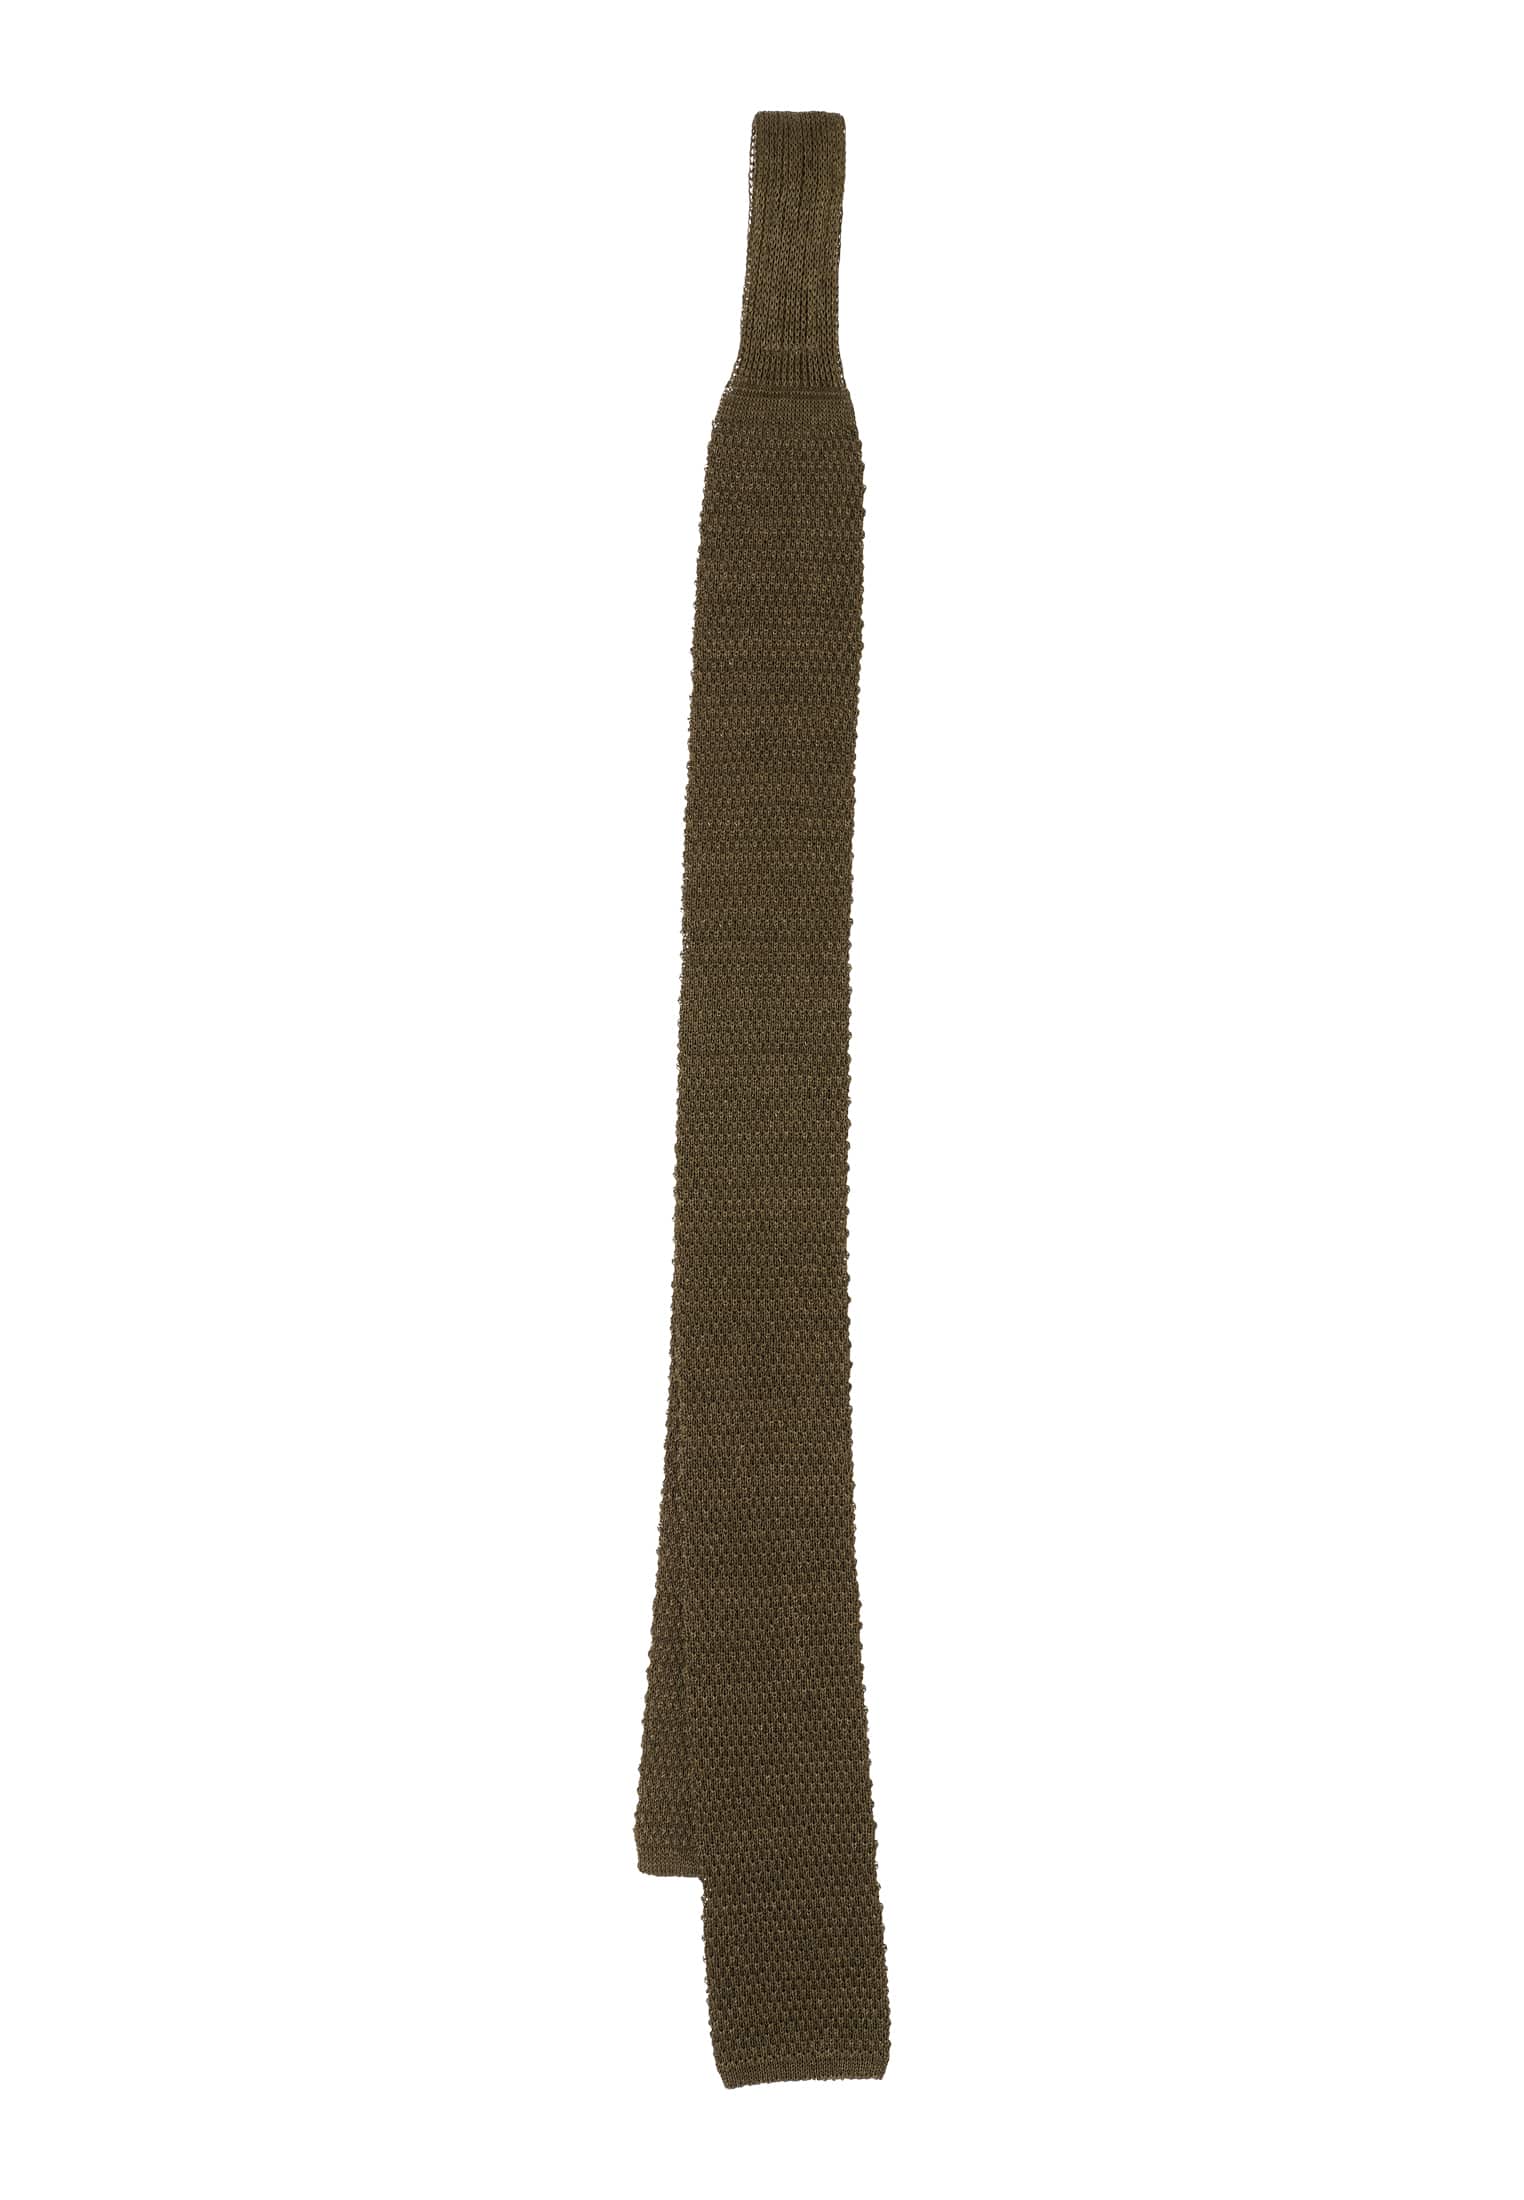 Krawatte in khaki unifarben | | 142 1AC02004-04-52-142 | khaki